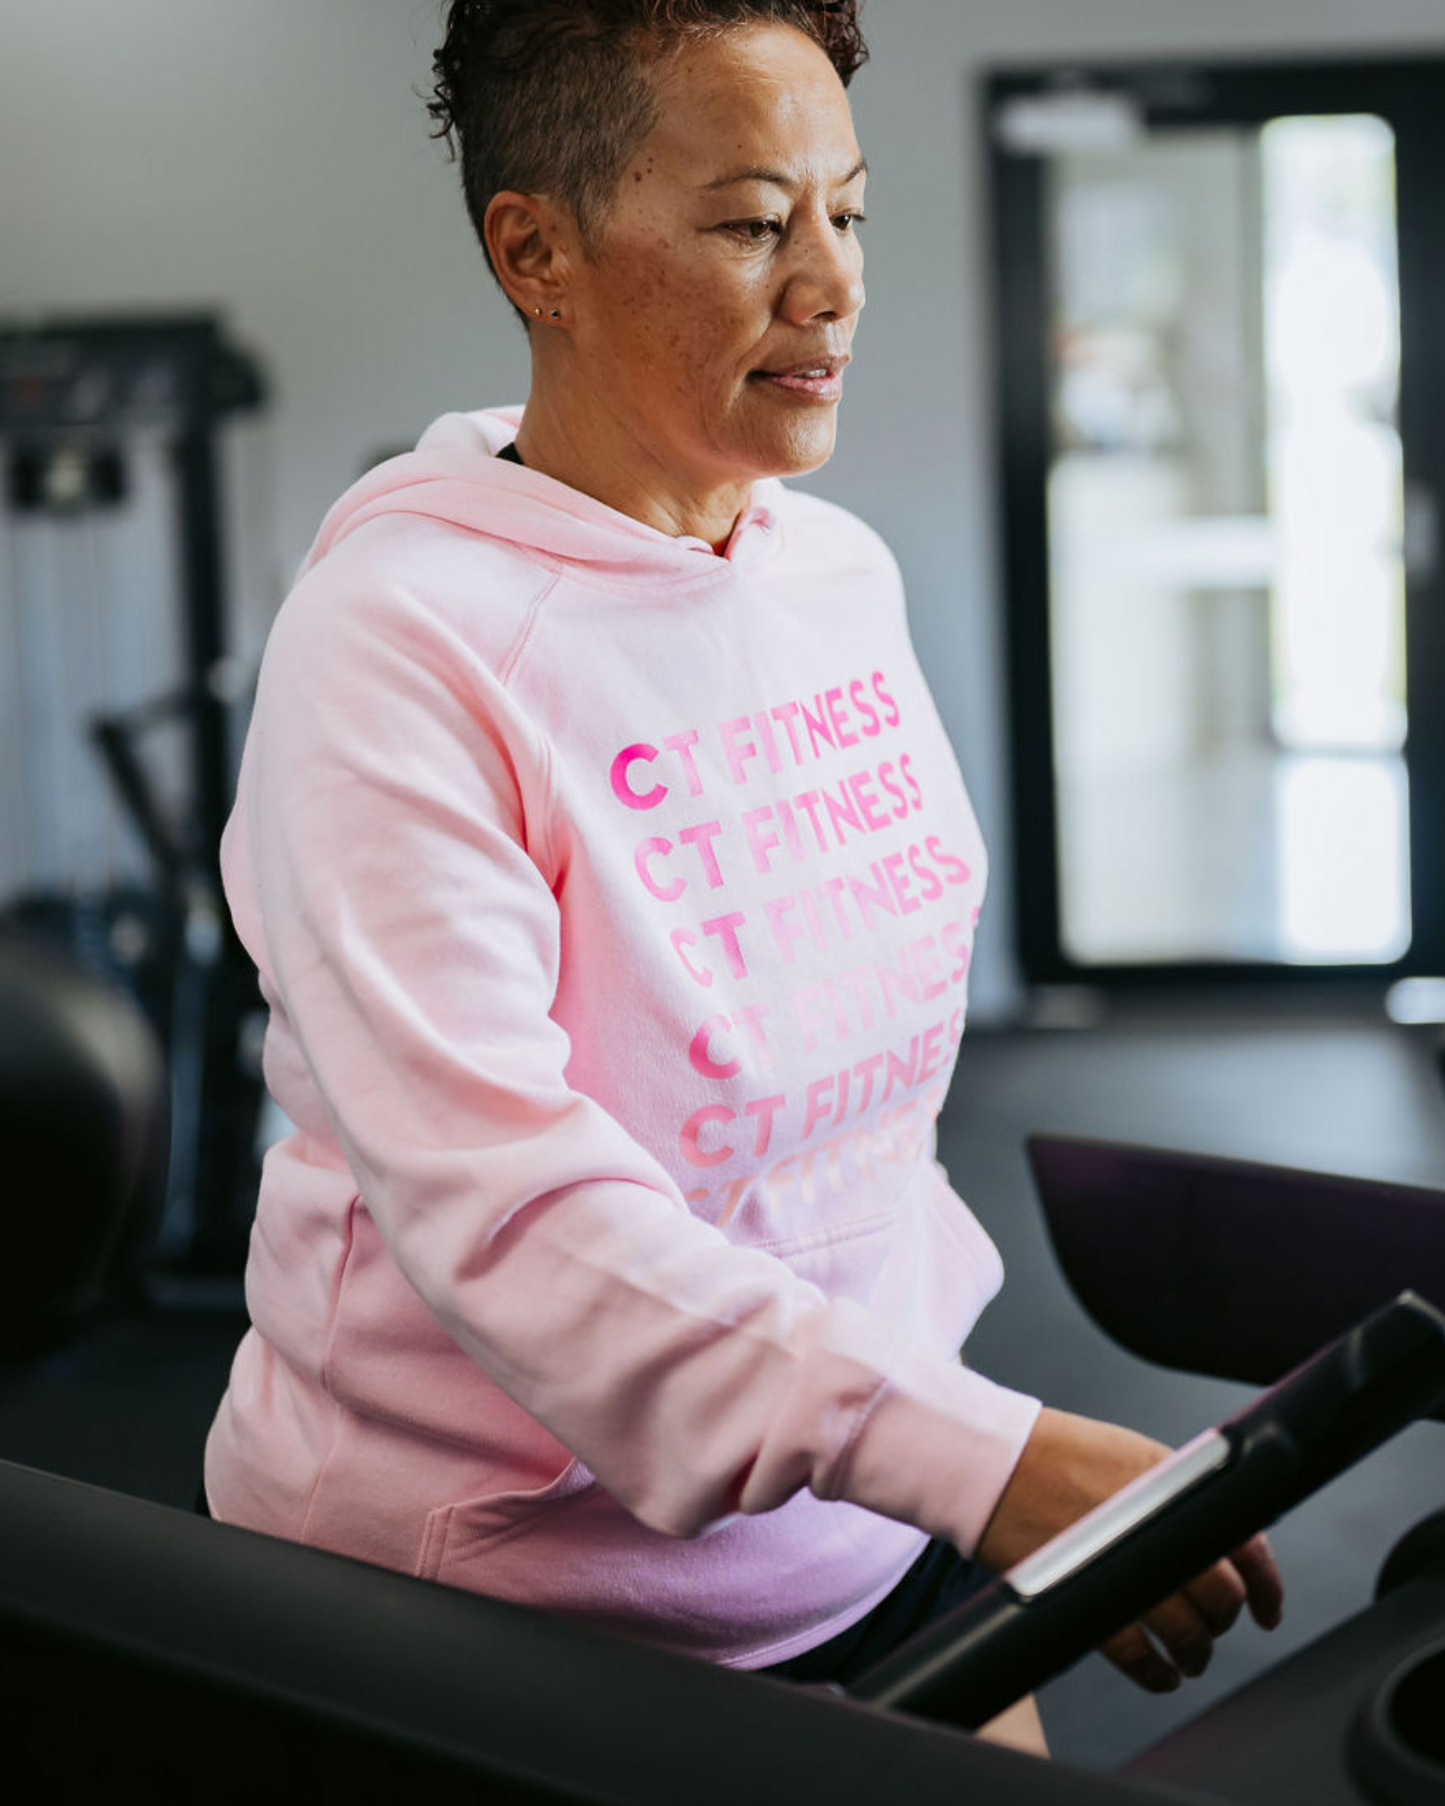 CT Fitness Pink Ombre Hoodie Sweatshirt